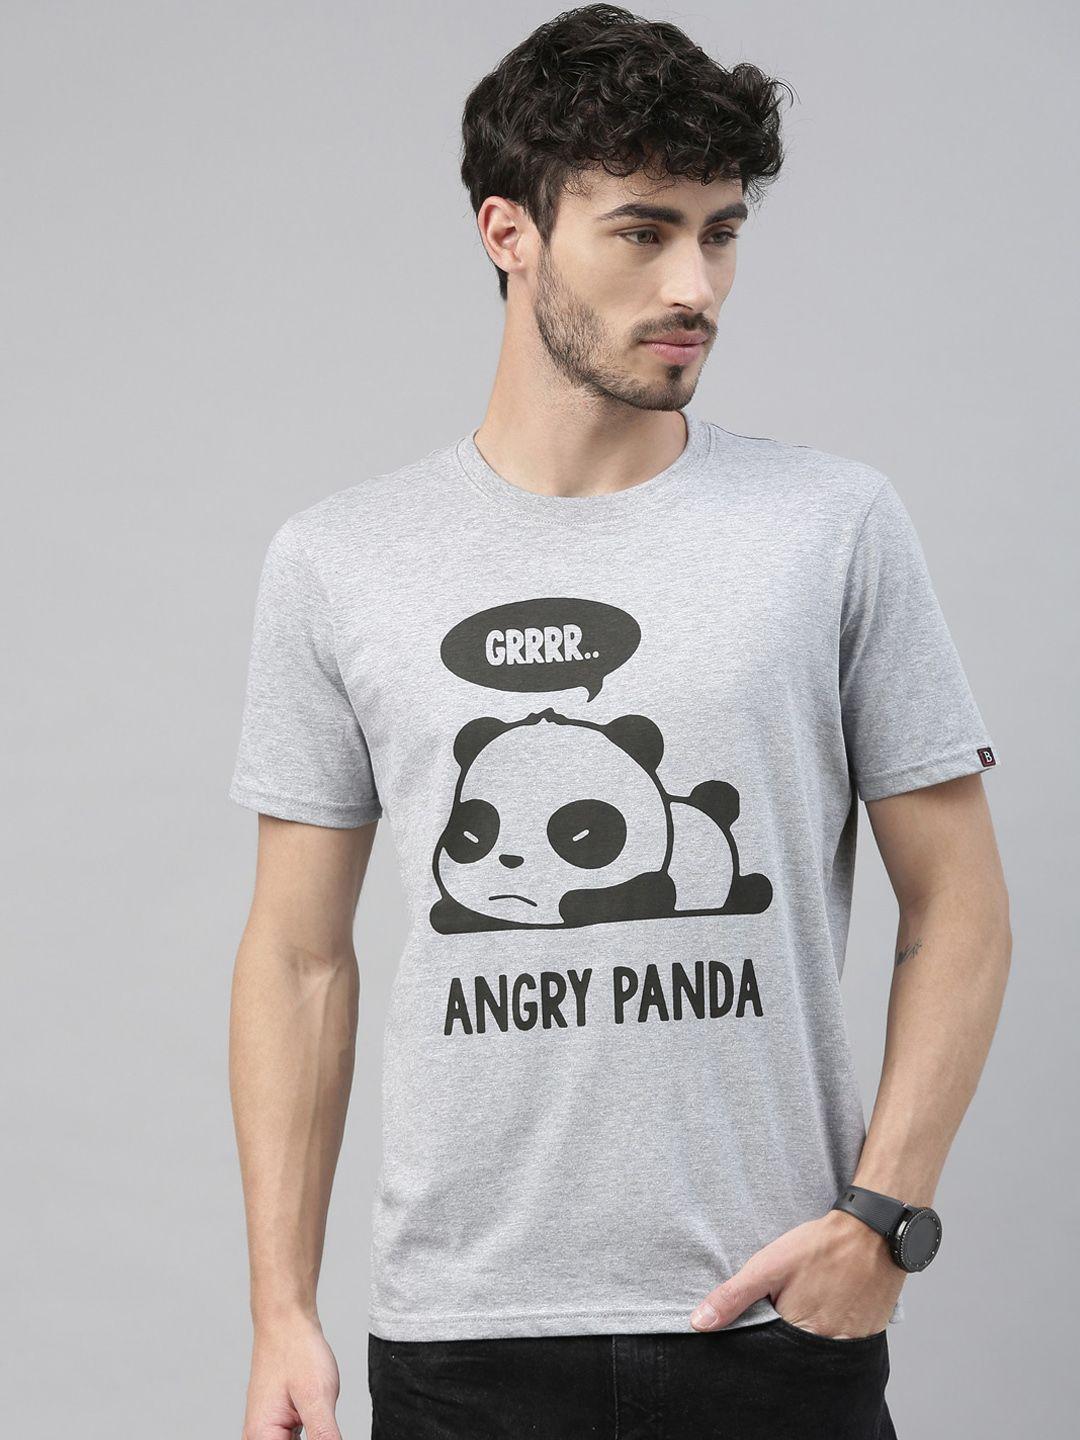 bushirt men grey melange printed angry panda round neck t-shirt